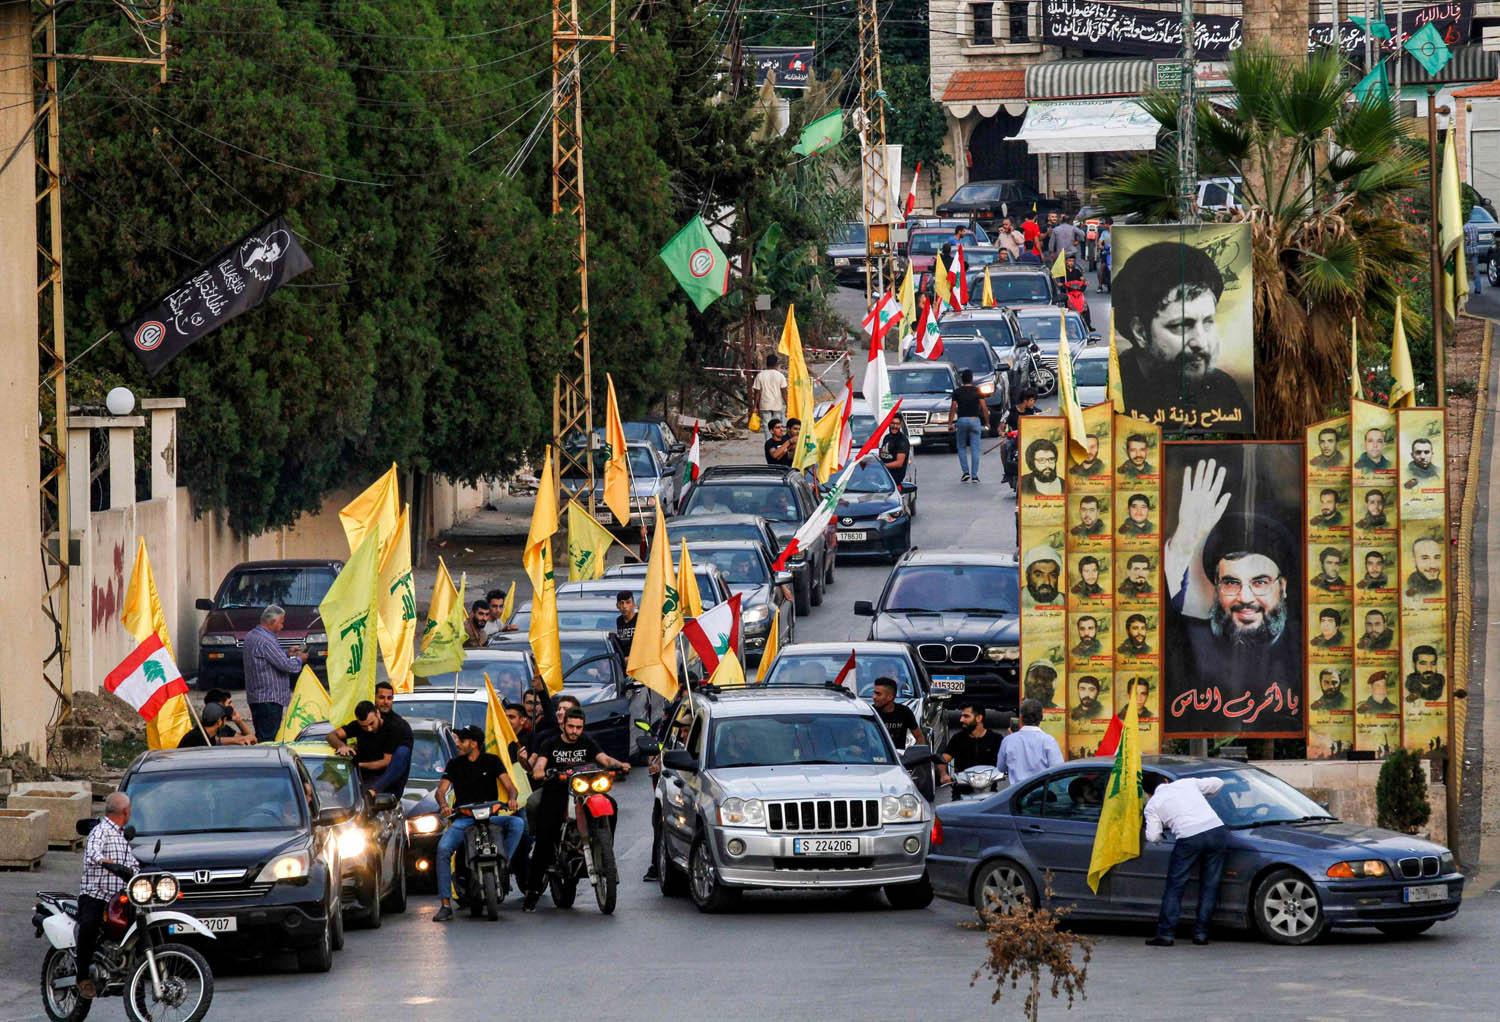 إليكم تفاصيل ما يحصل في لبنان.. ما علاقة حزب الله؟